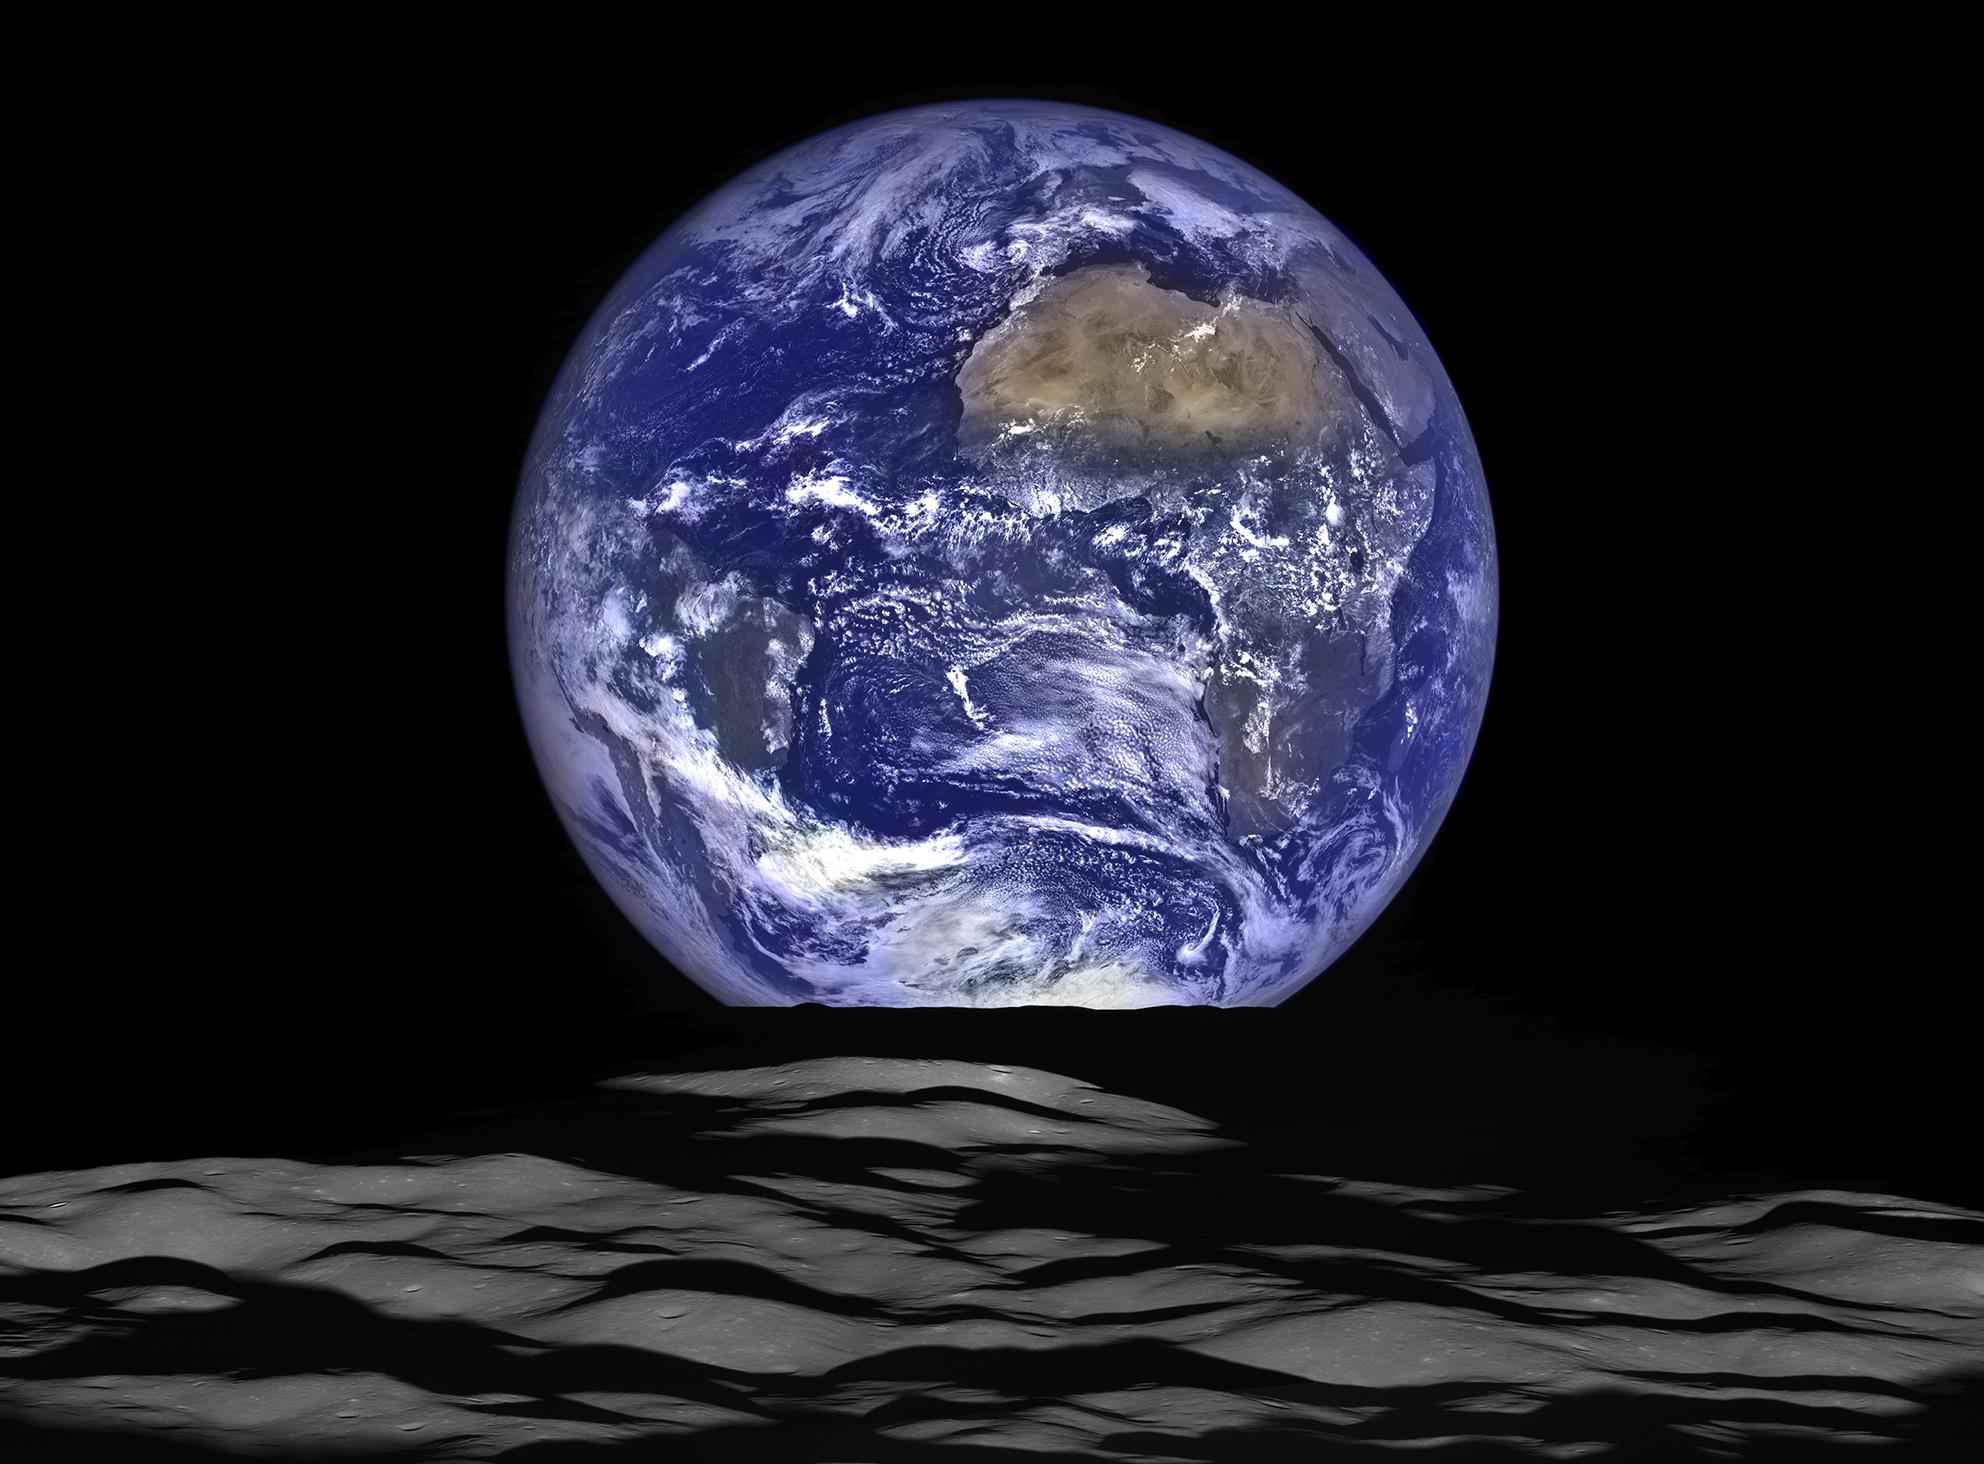 Η Γη ανατέλλει σε φαντασμαγορική εικόνα από τη Σελήνη